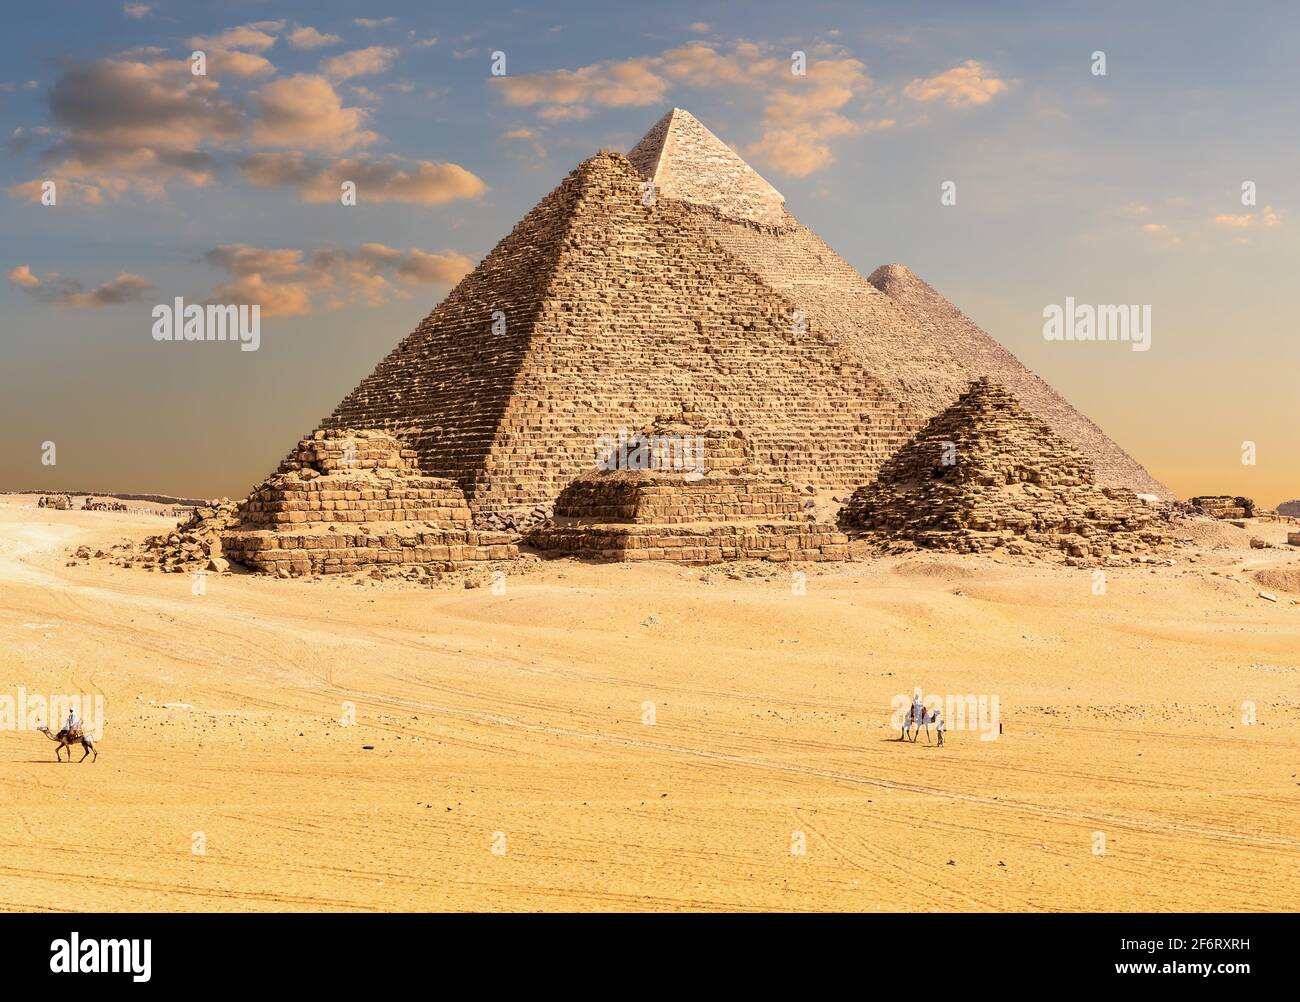 Pyramides de Gizeh en Égypte, dunes de sable et bédouins. Banque D'Images